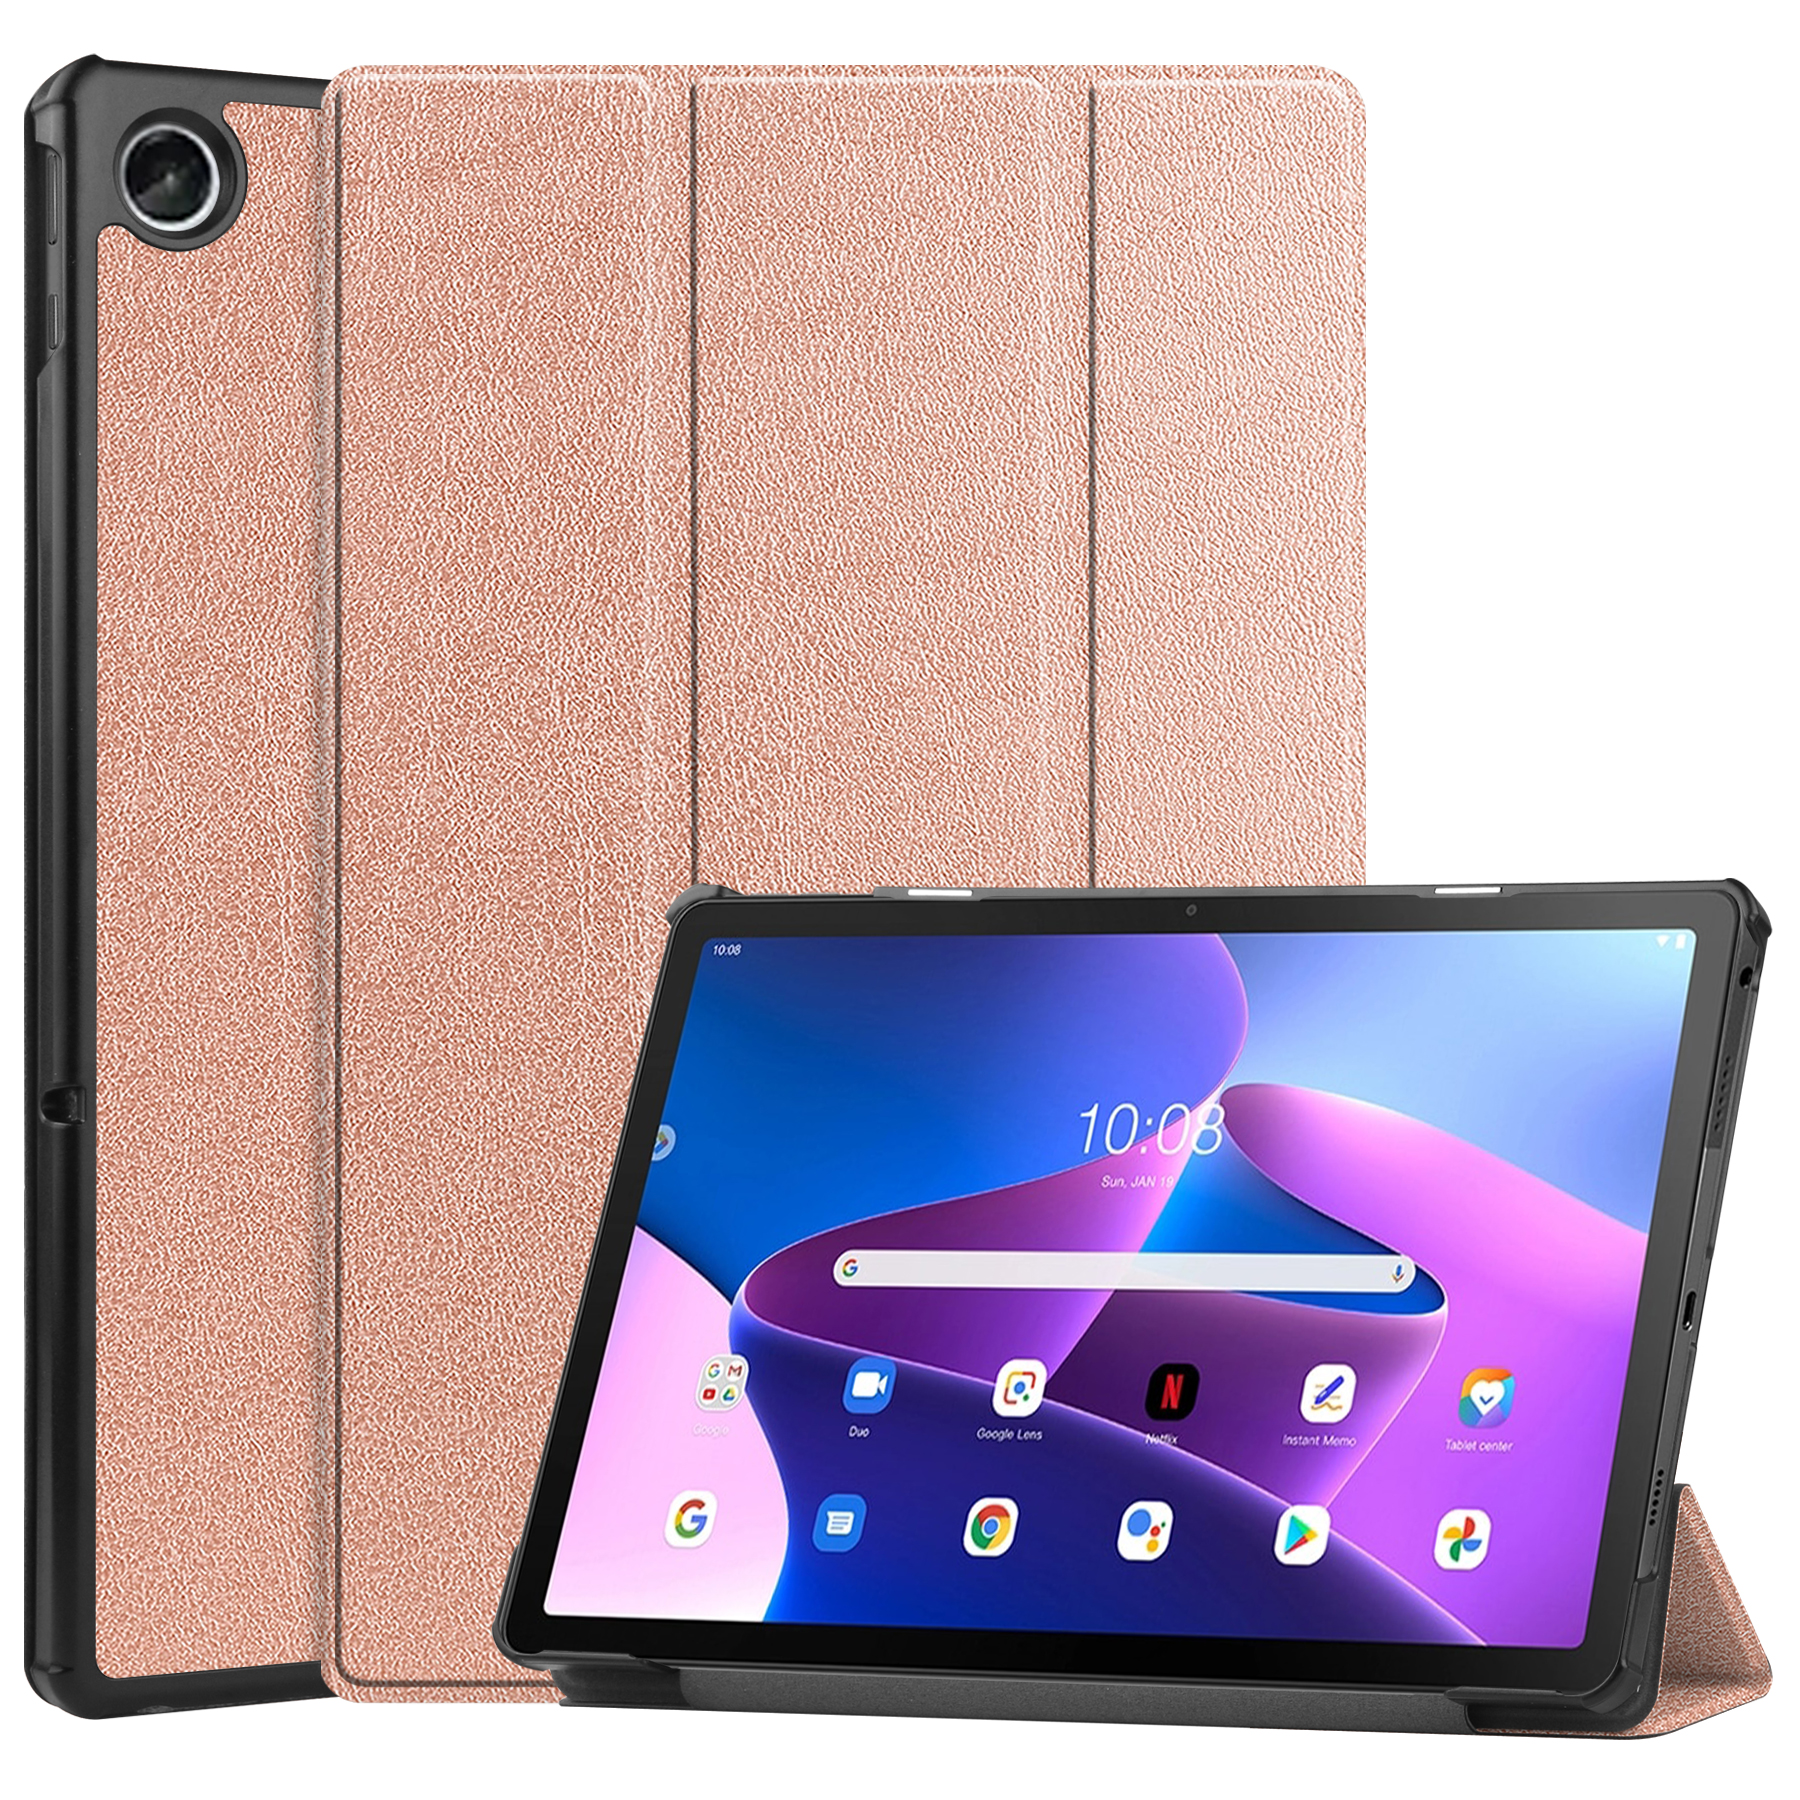 huilen Scepticisme Veel Case2go Tablet Hoes & Screenprotector voor Lenovo Tab M10 Plus (3e gen) tablet  hoes en screenprotector - 2 in 1 cover - 10.6 inch - Tri-Fold Book Case -  Rosé Goud | Case2go.nl